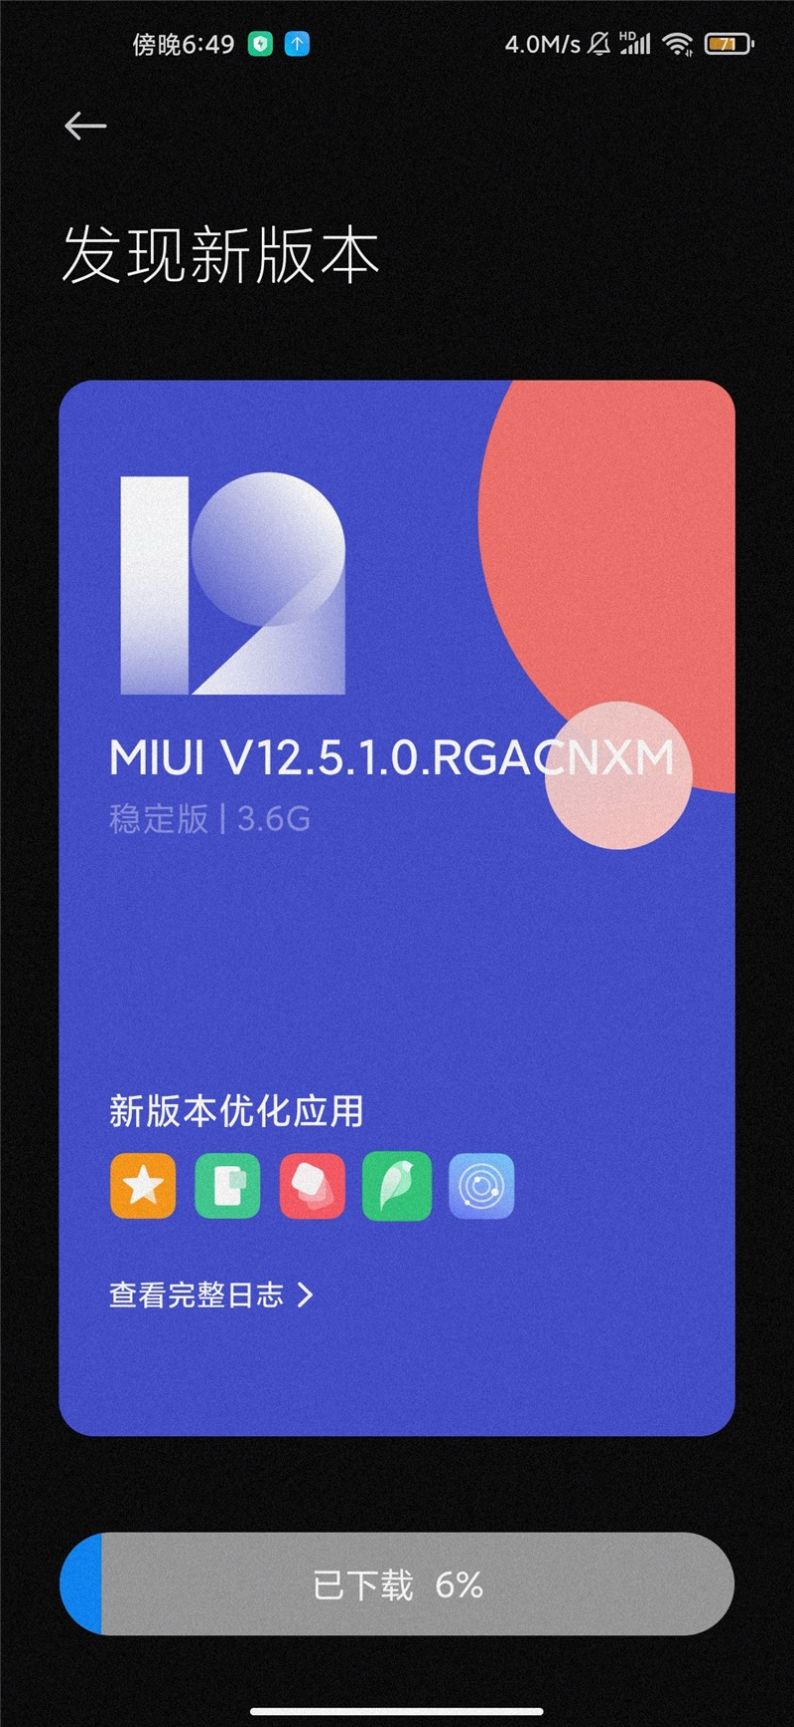 miui12.5.1.0